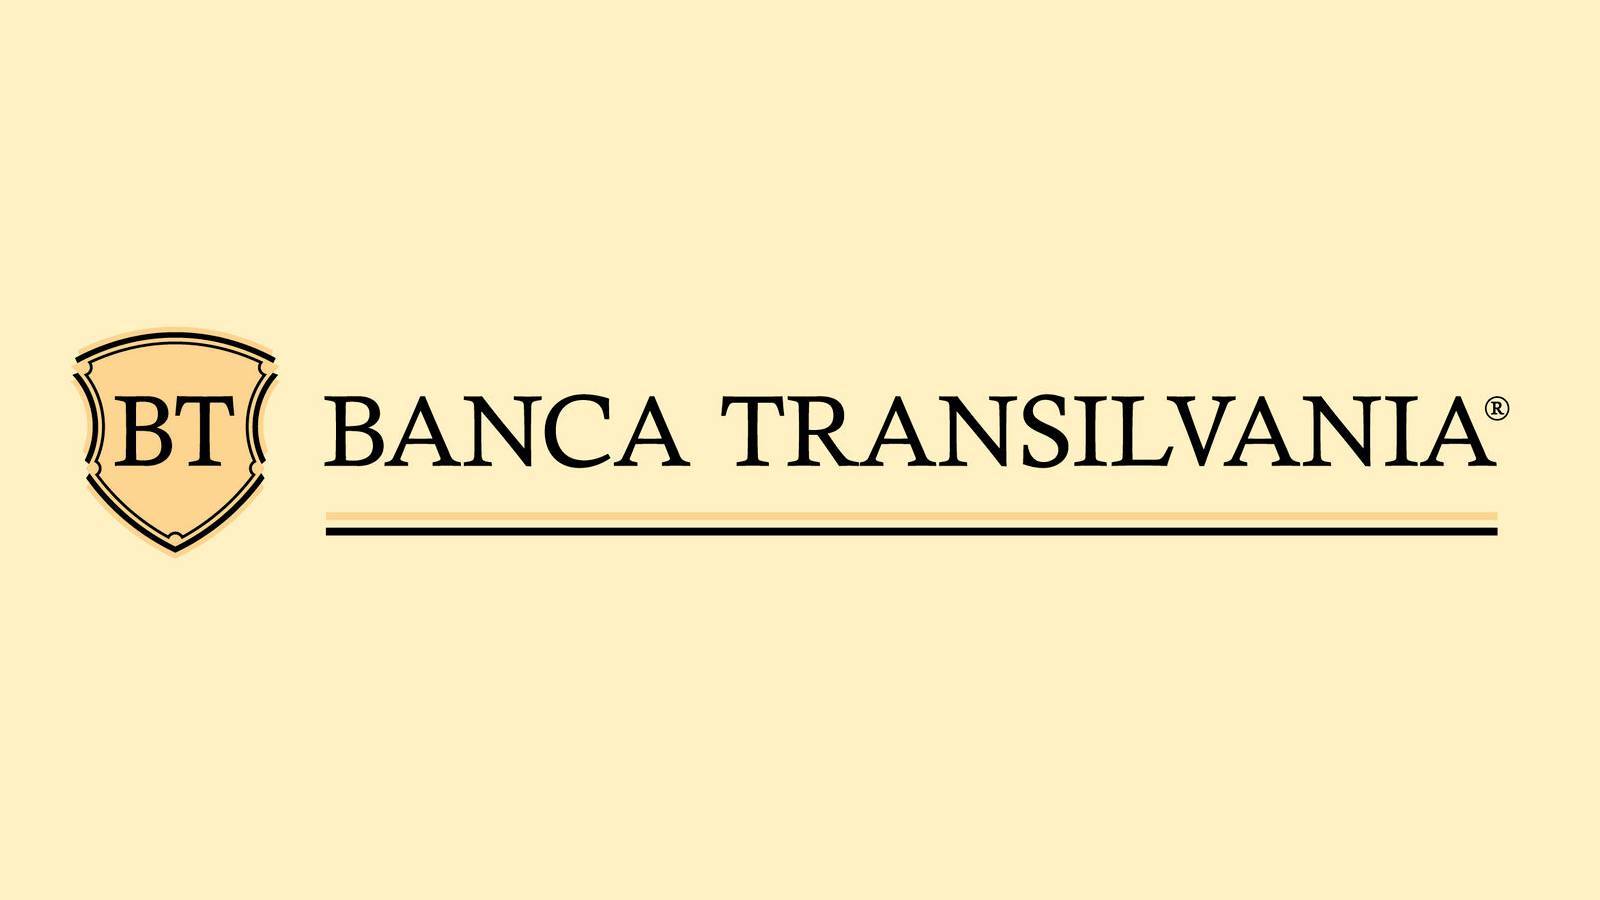 Información de ADVERTENCIA oficial de BANCA Transilvania enviada a todos los clientes